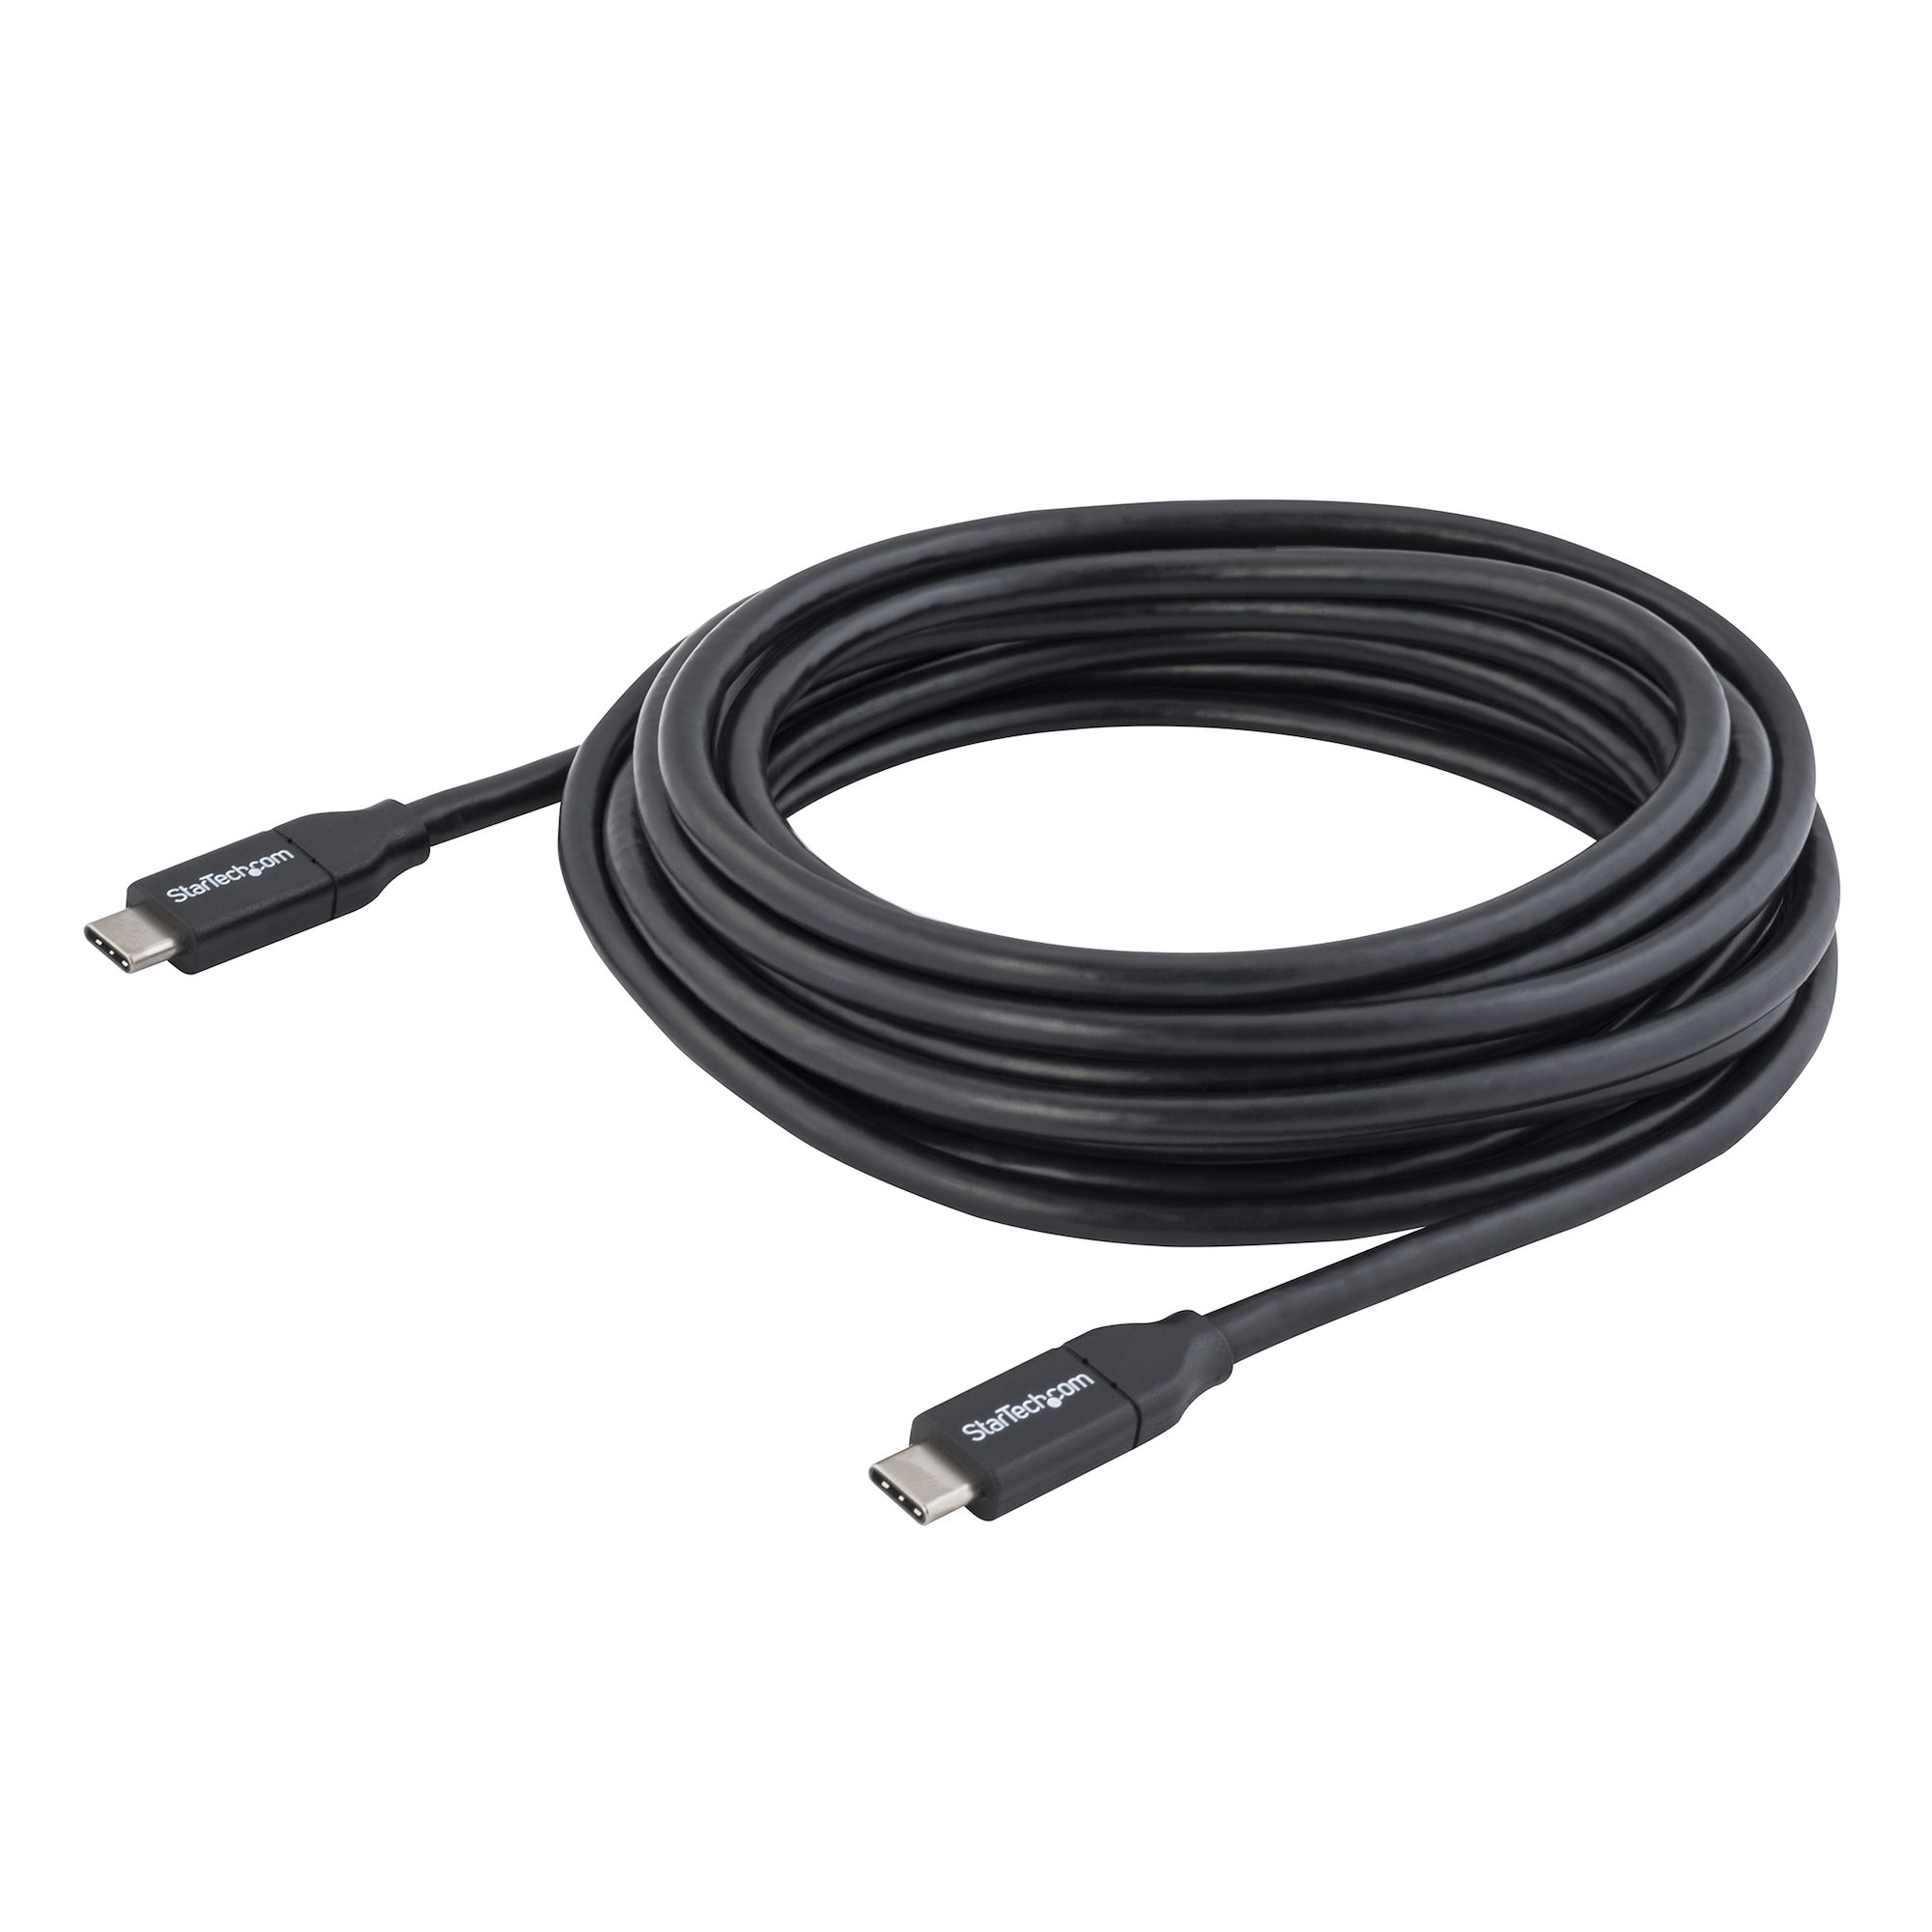 Cuatro cables USB Tipo-C a buen precio para tu nuevo smartphone